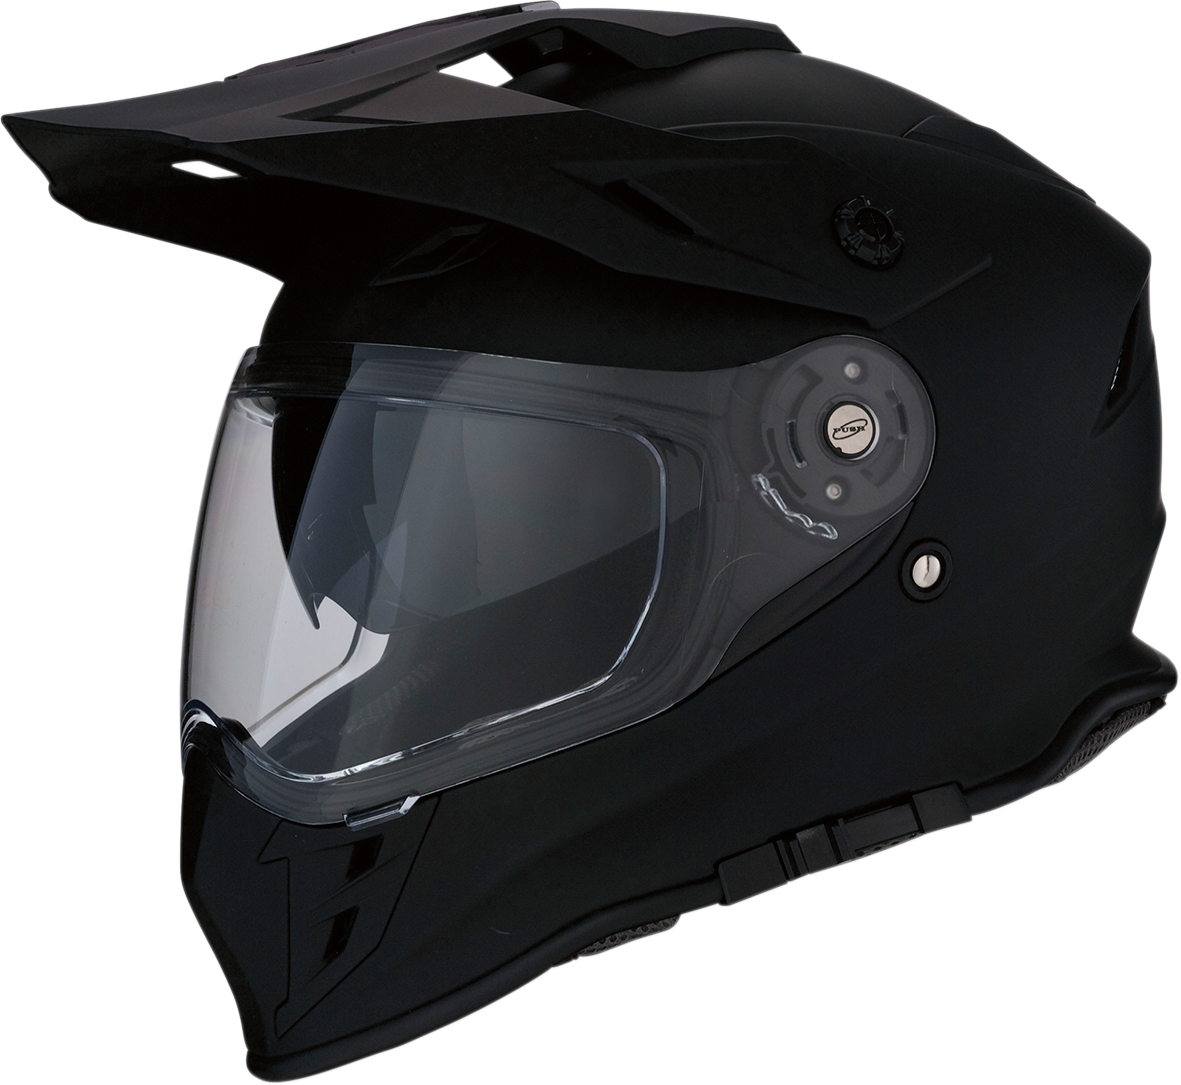 Z1R Range MIPS Unisex Fullface Dual Sport Motorcycle Riding Street Racing Helmet